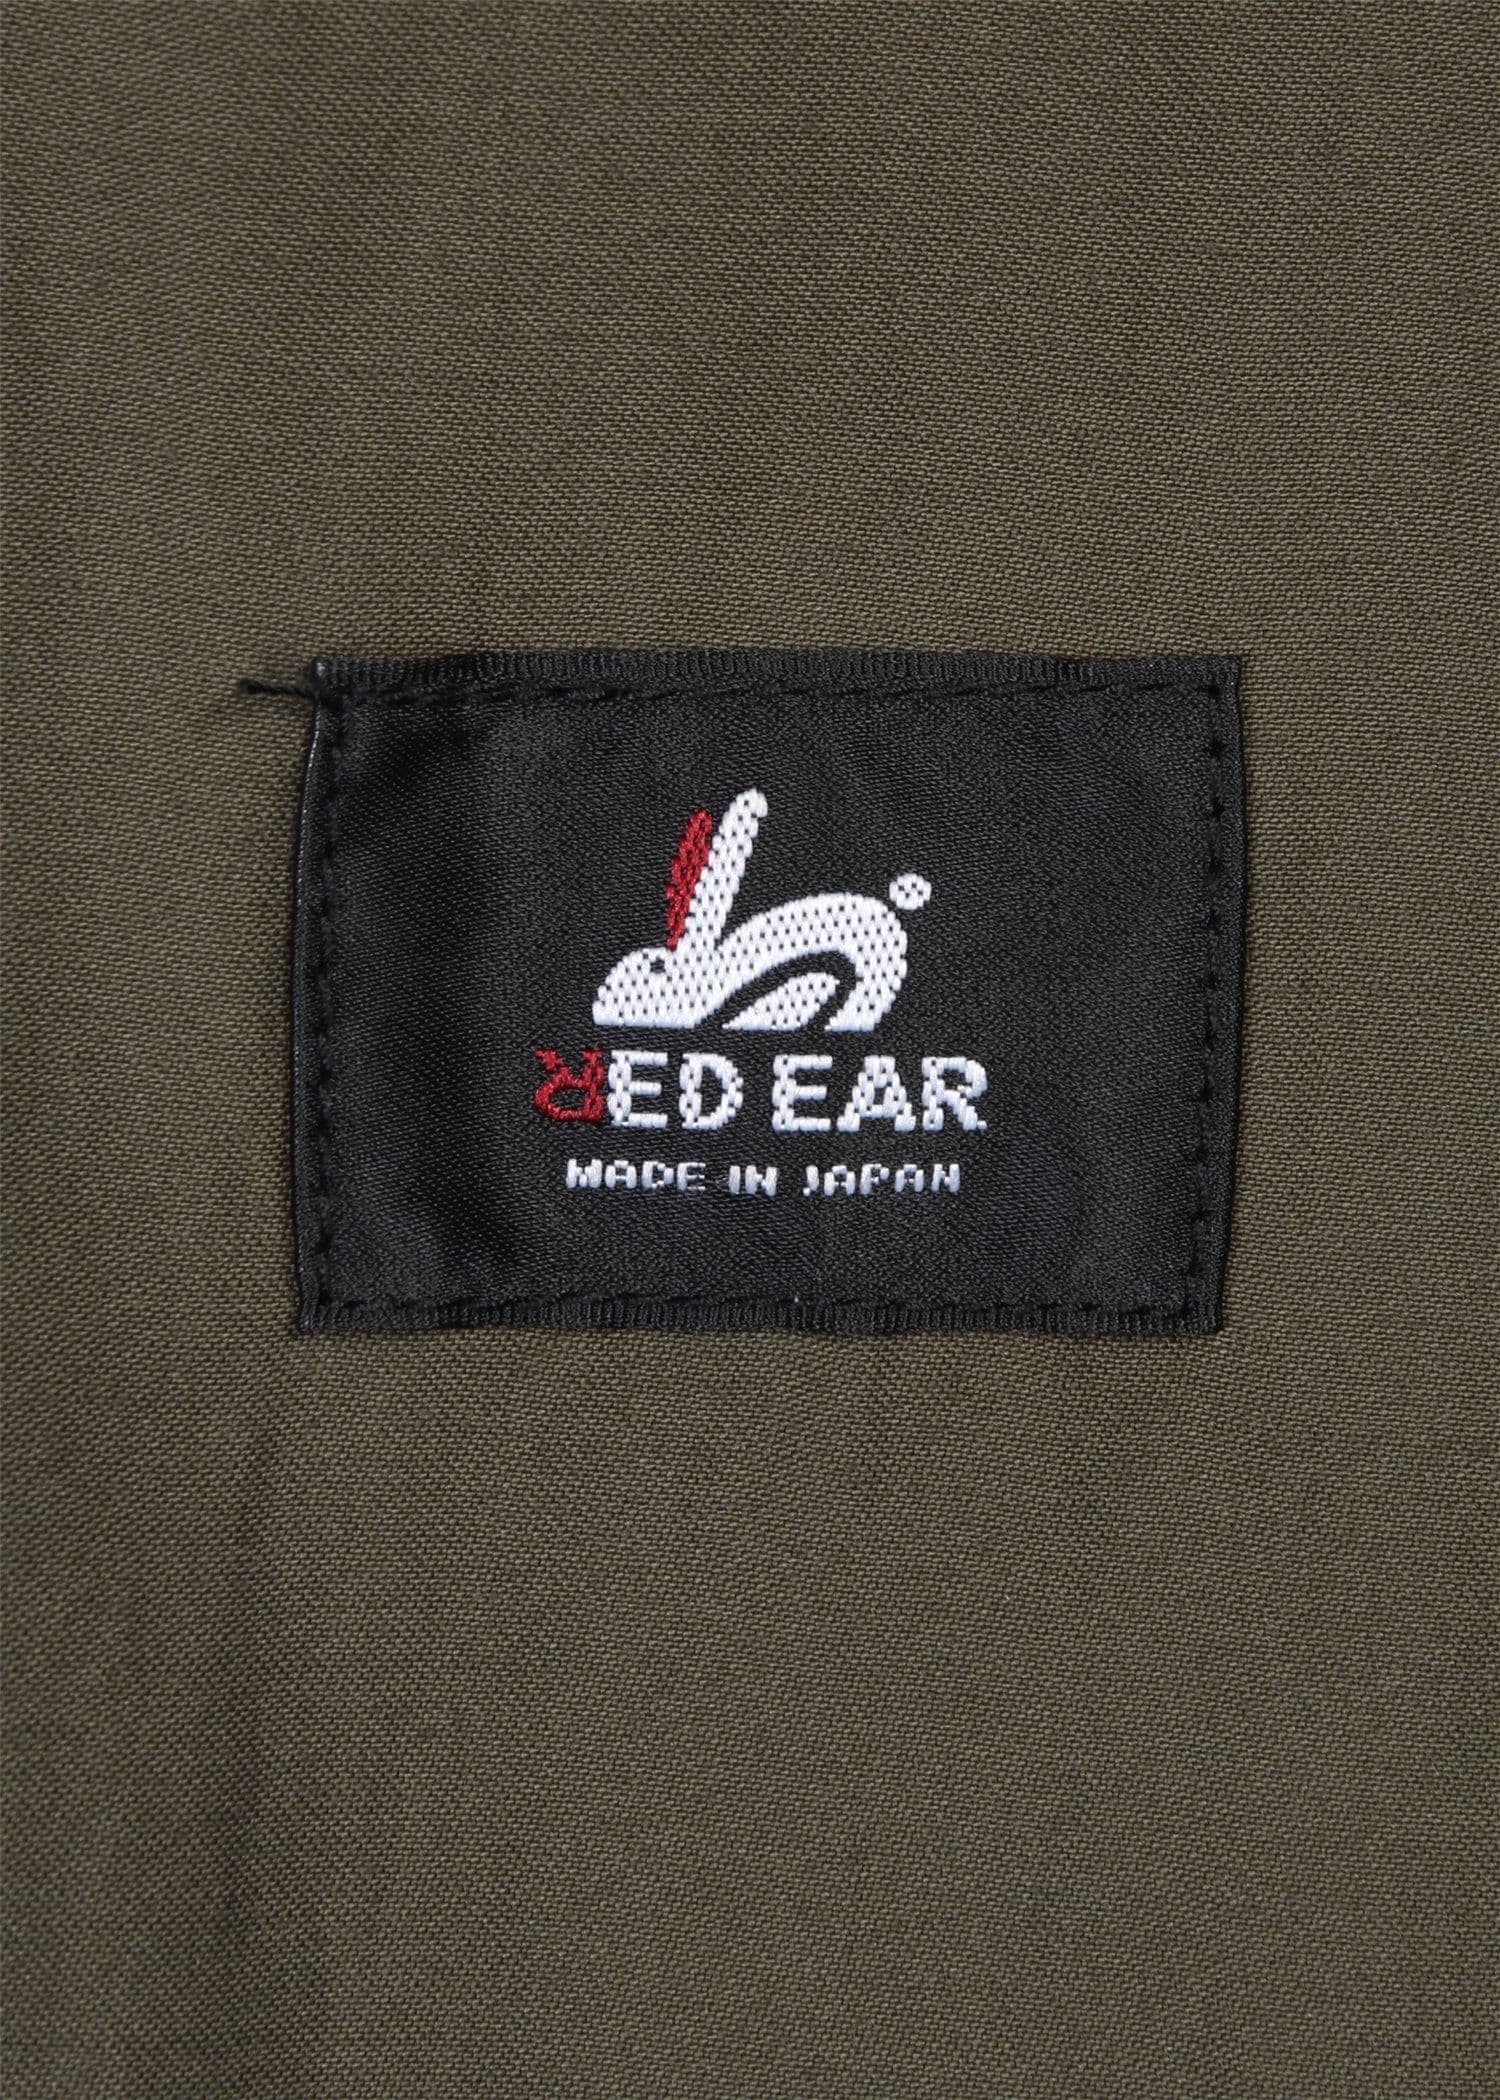 RED EAR サイドライン サテンショーツ